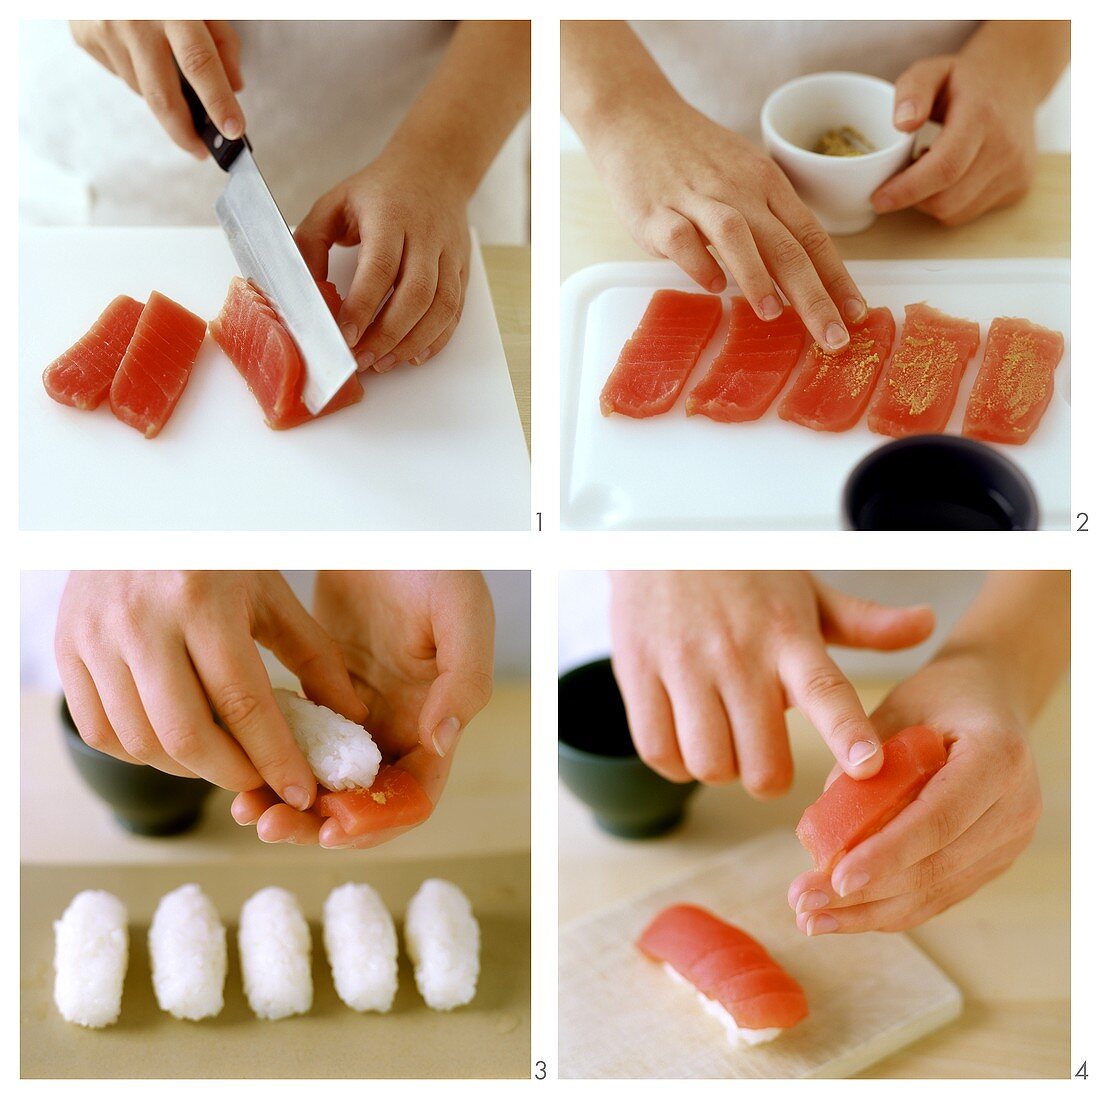 Zubereiten von Nigiri-Sushi mit Thunfisch